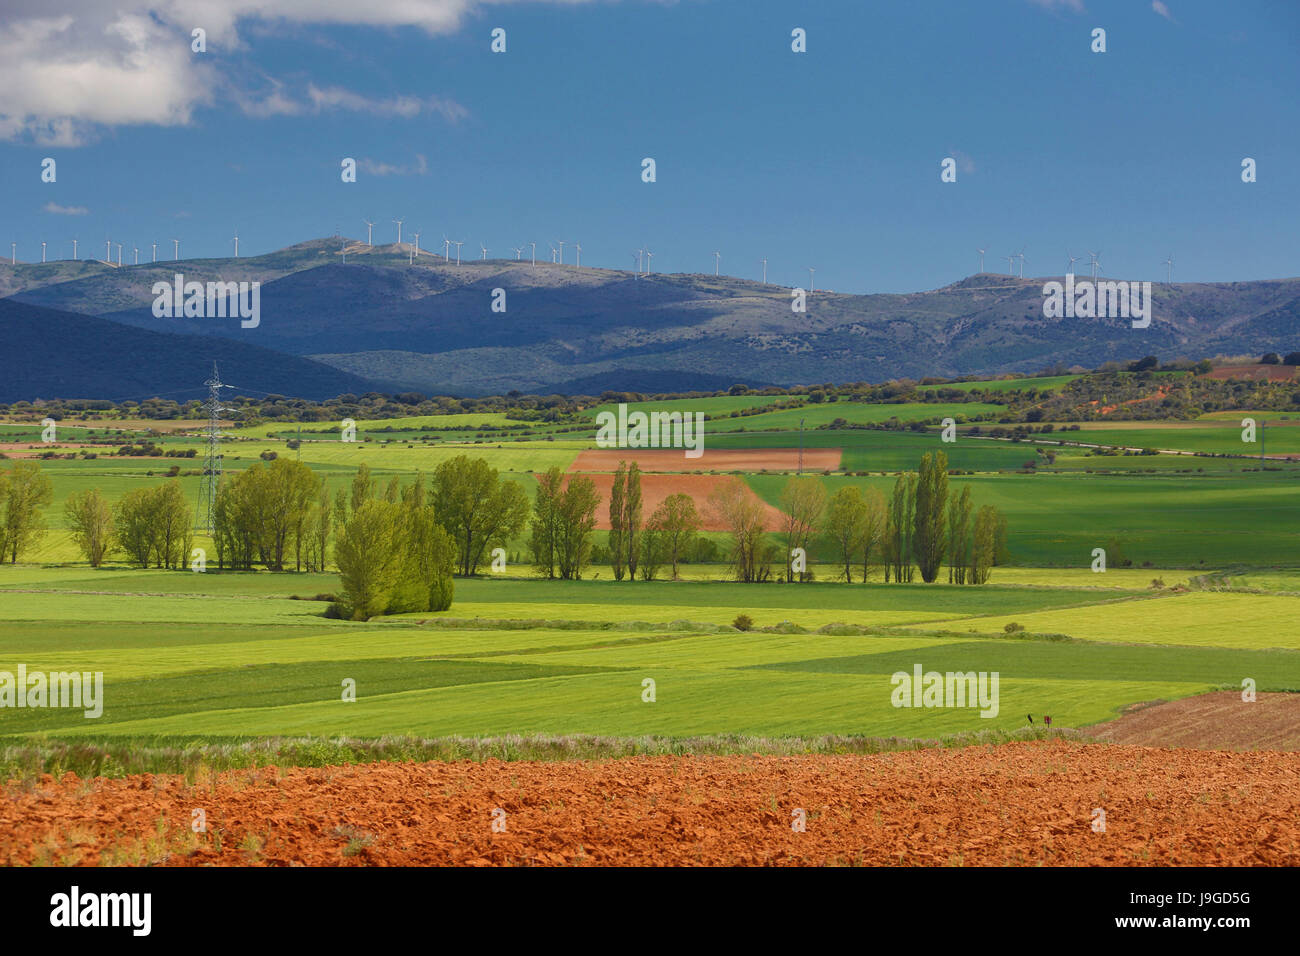 Spain, Castilla Leon Community, Soria Province landscape, Stock Photo